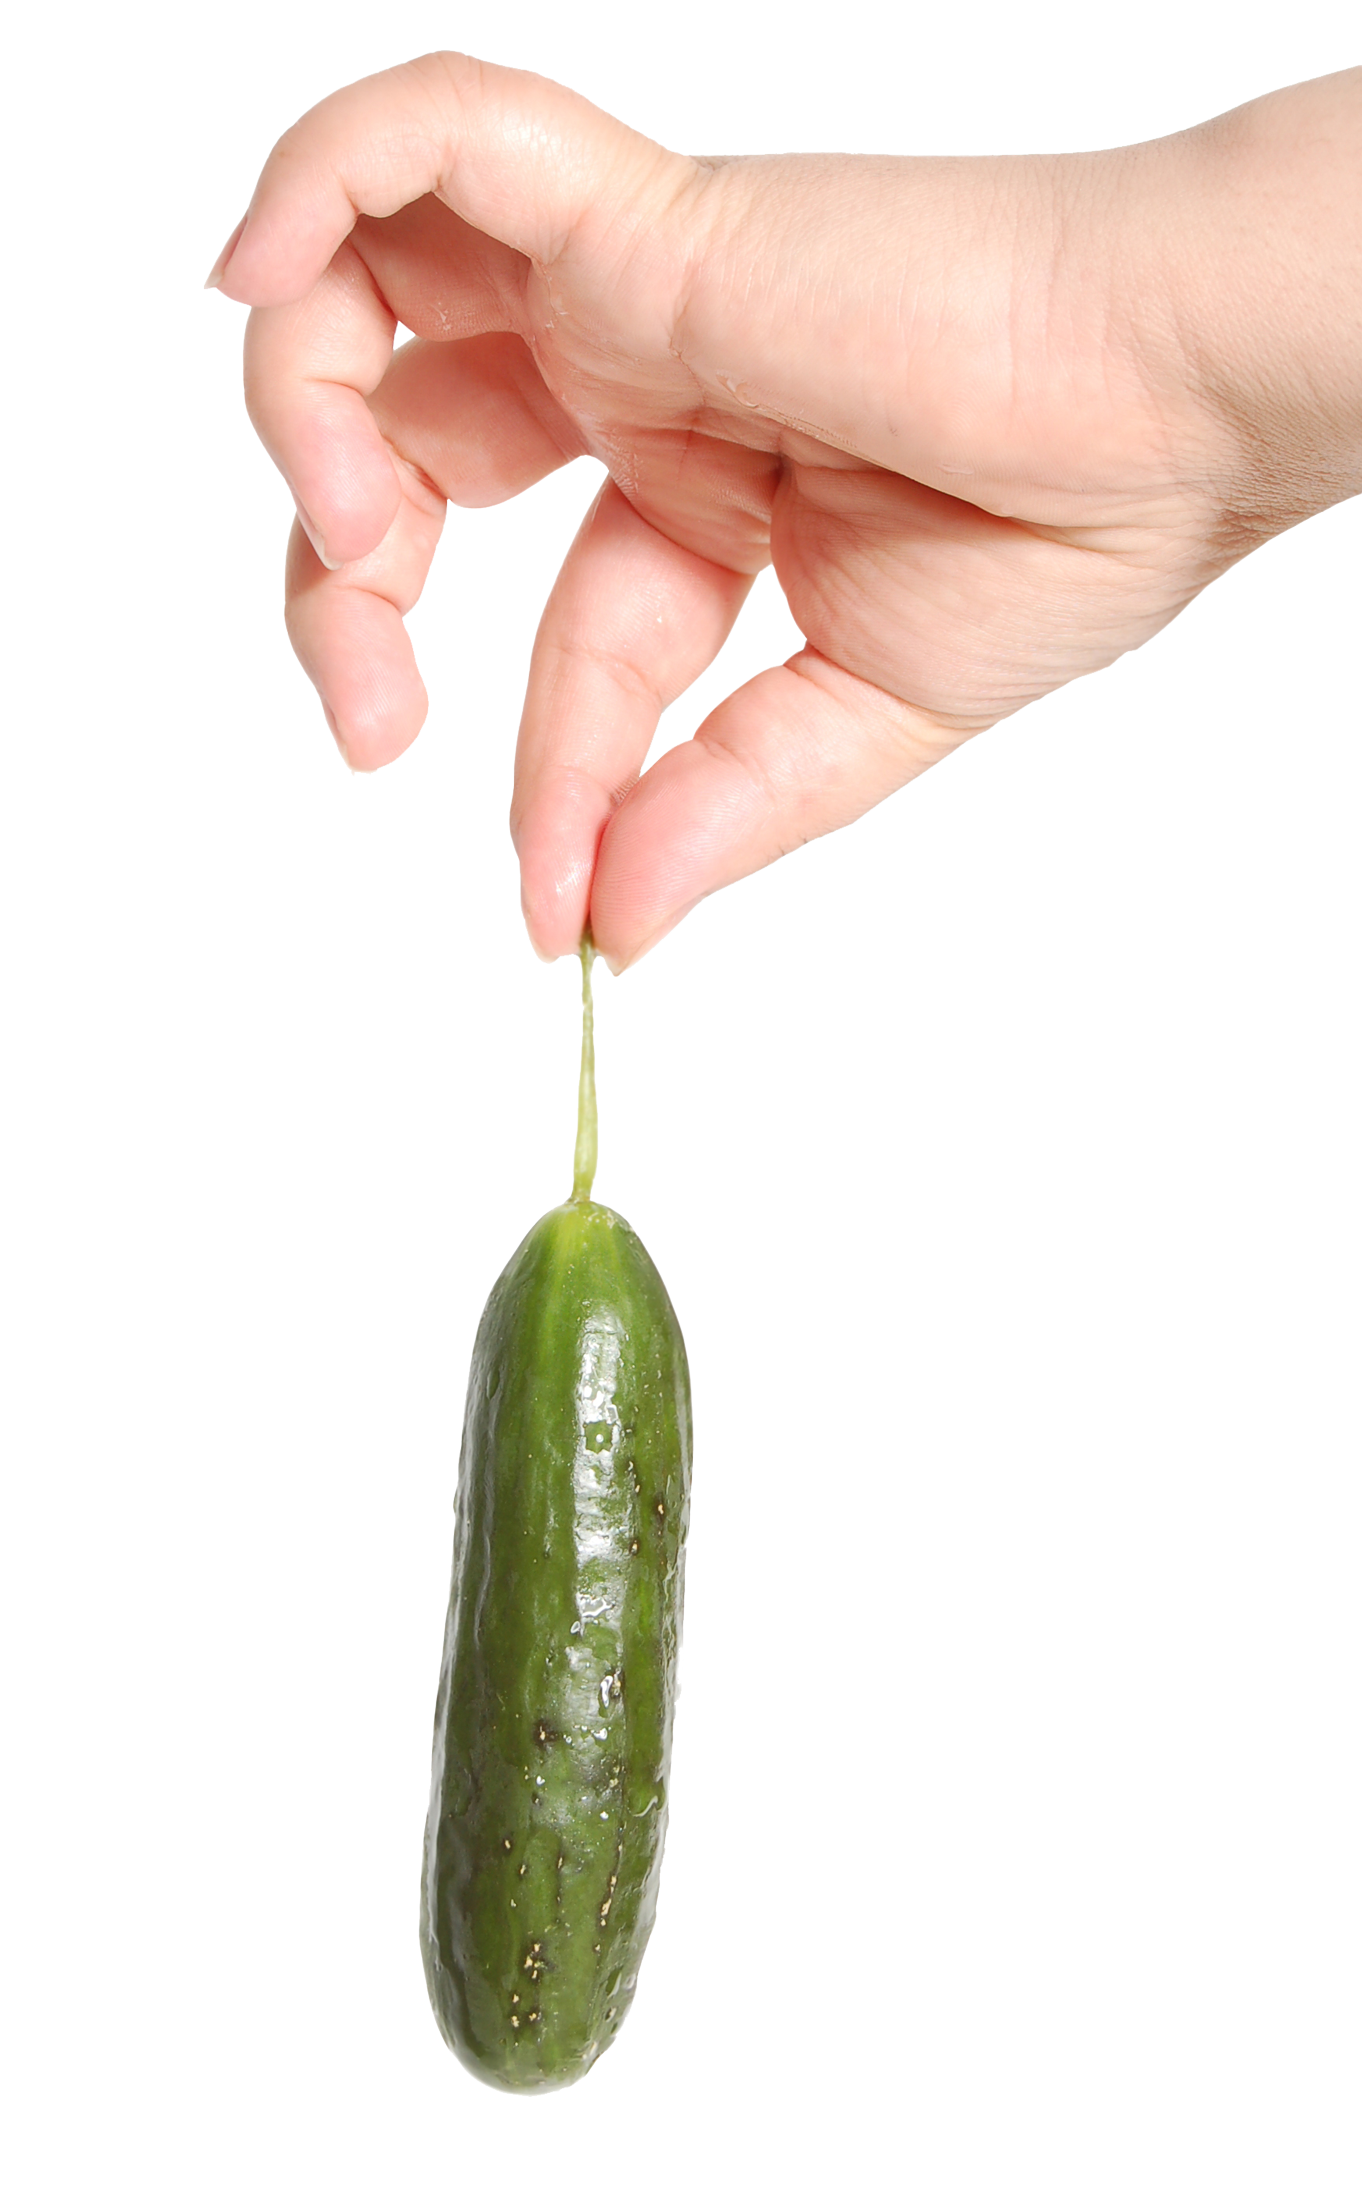 Single Cucumber Transparent Images